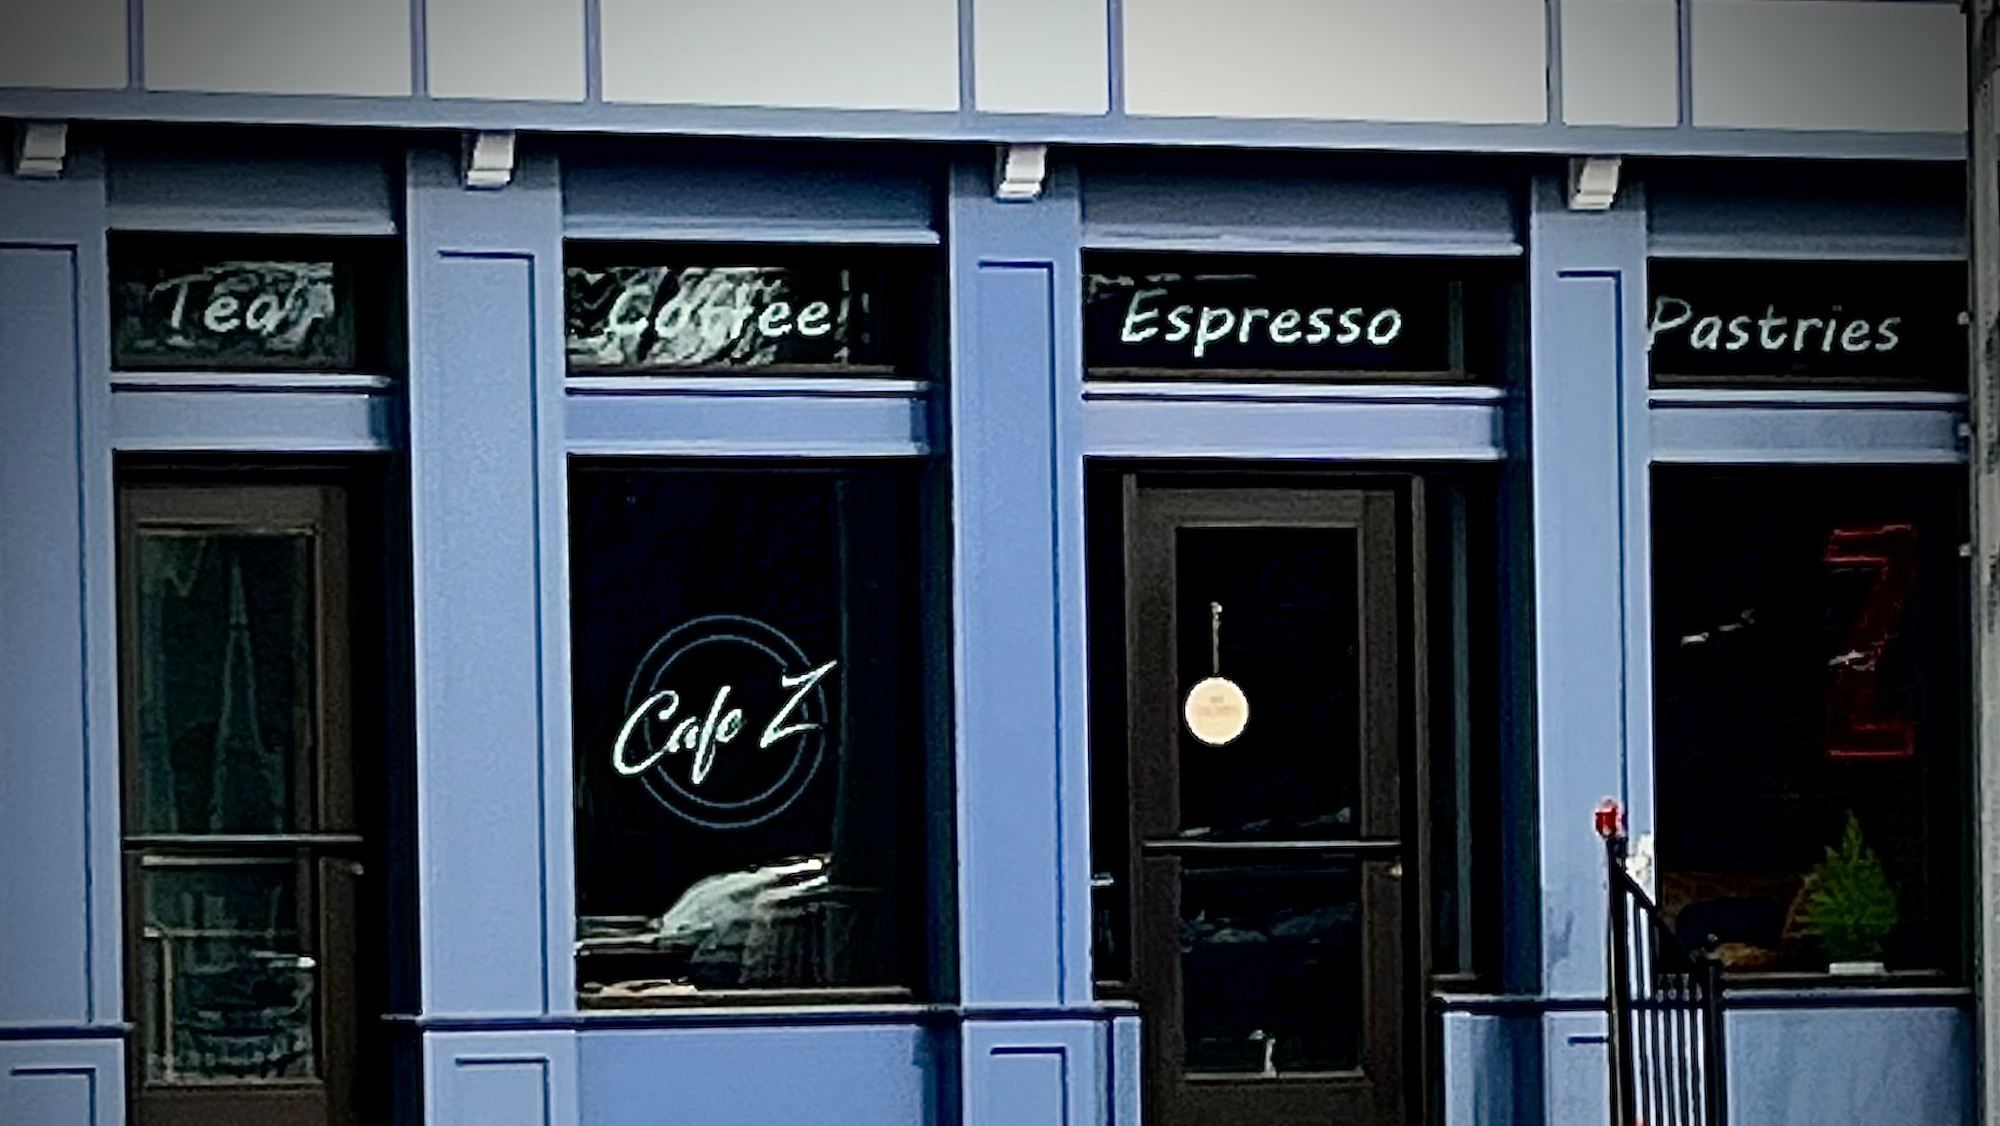 Cafe Z